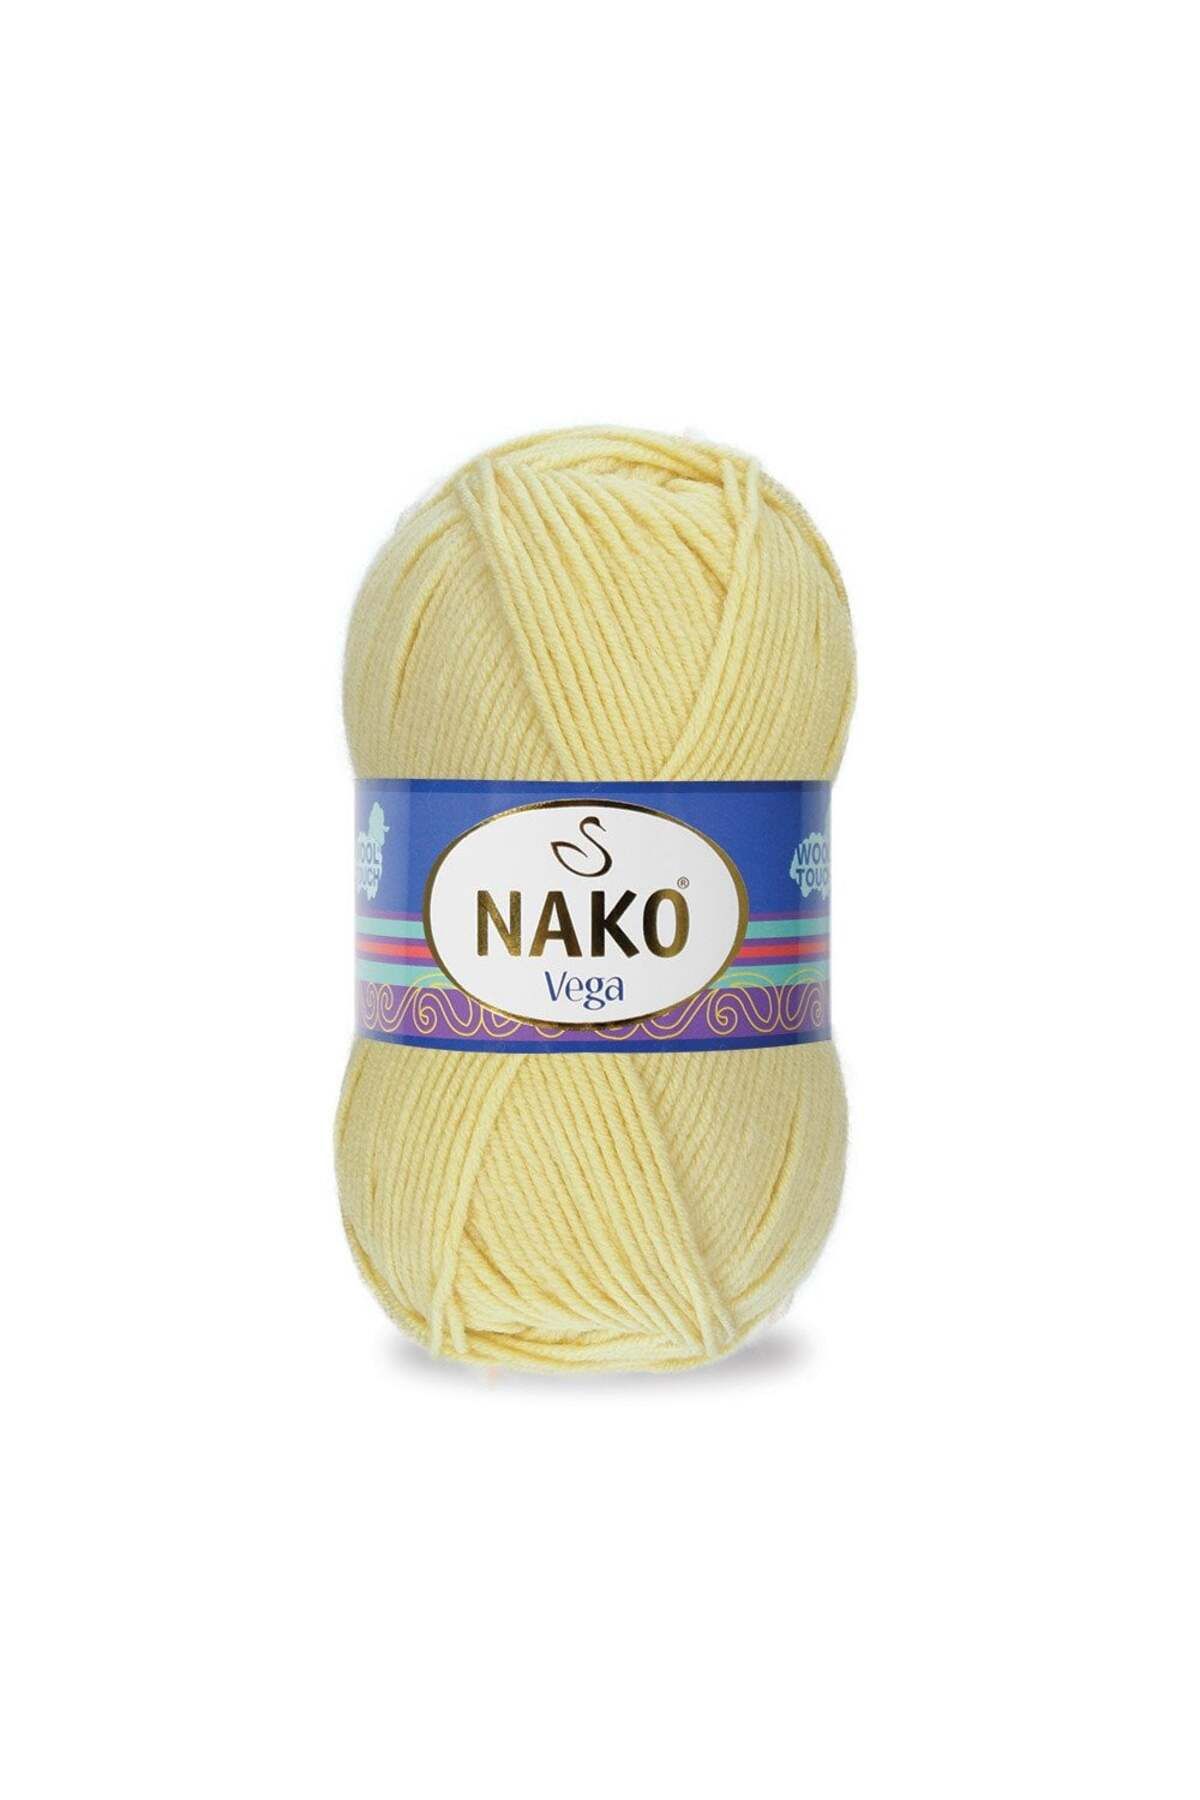 Nako 5 Adet Nako Vega 11599 Açık Sarı